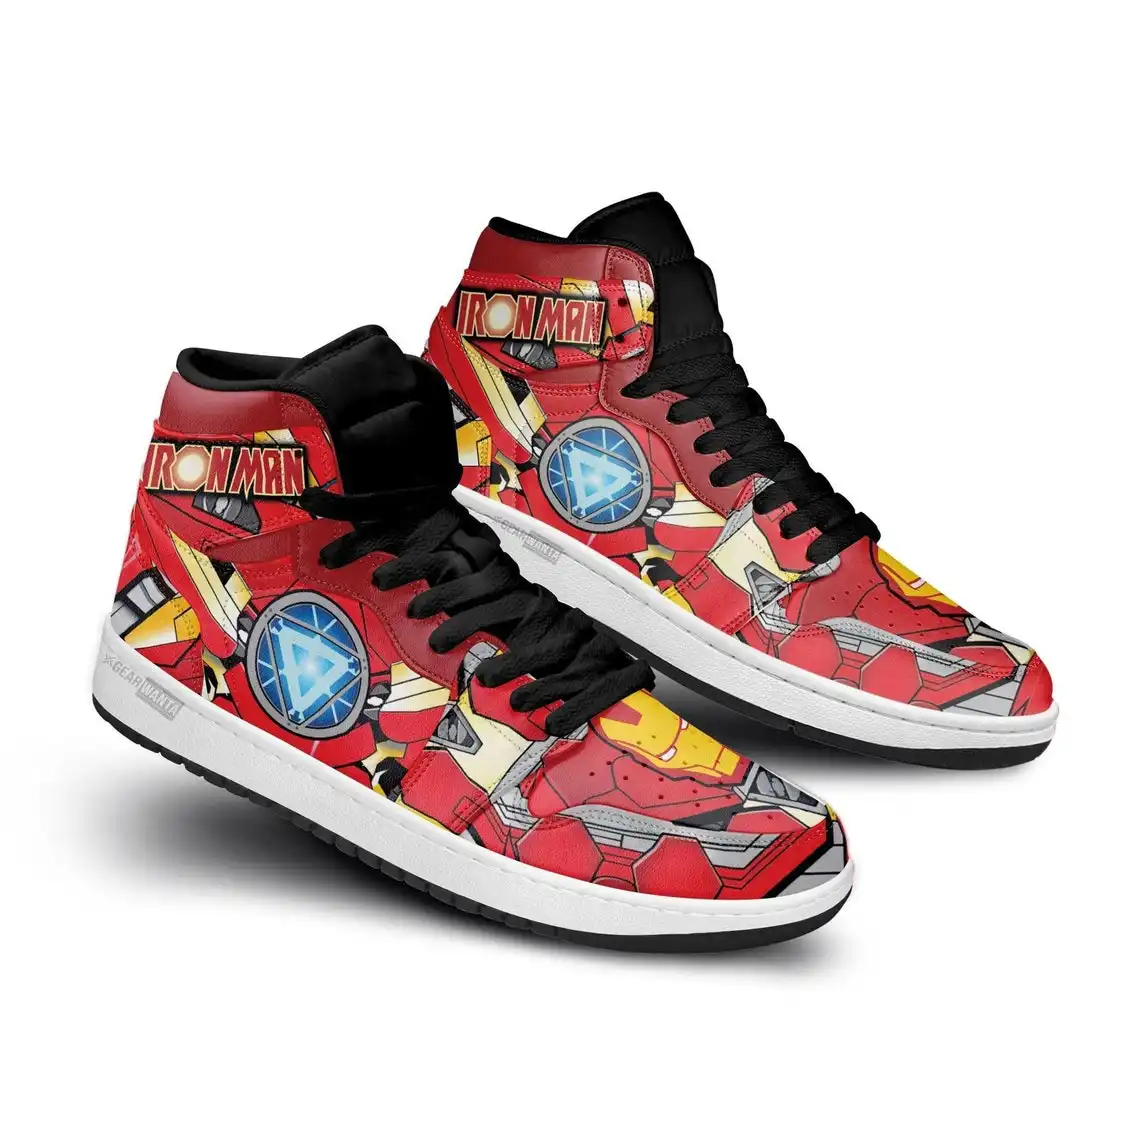 Avenger Ironman Super Heroes For Movie Fans - Custom Anime Sneaker For Men And Women Air Jordan Shoes